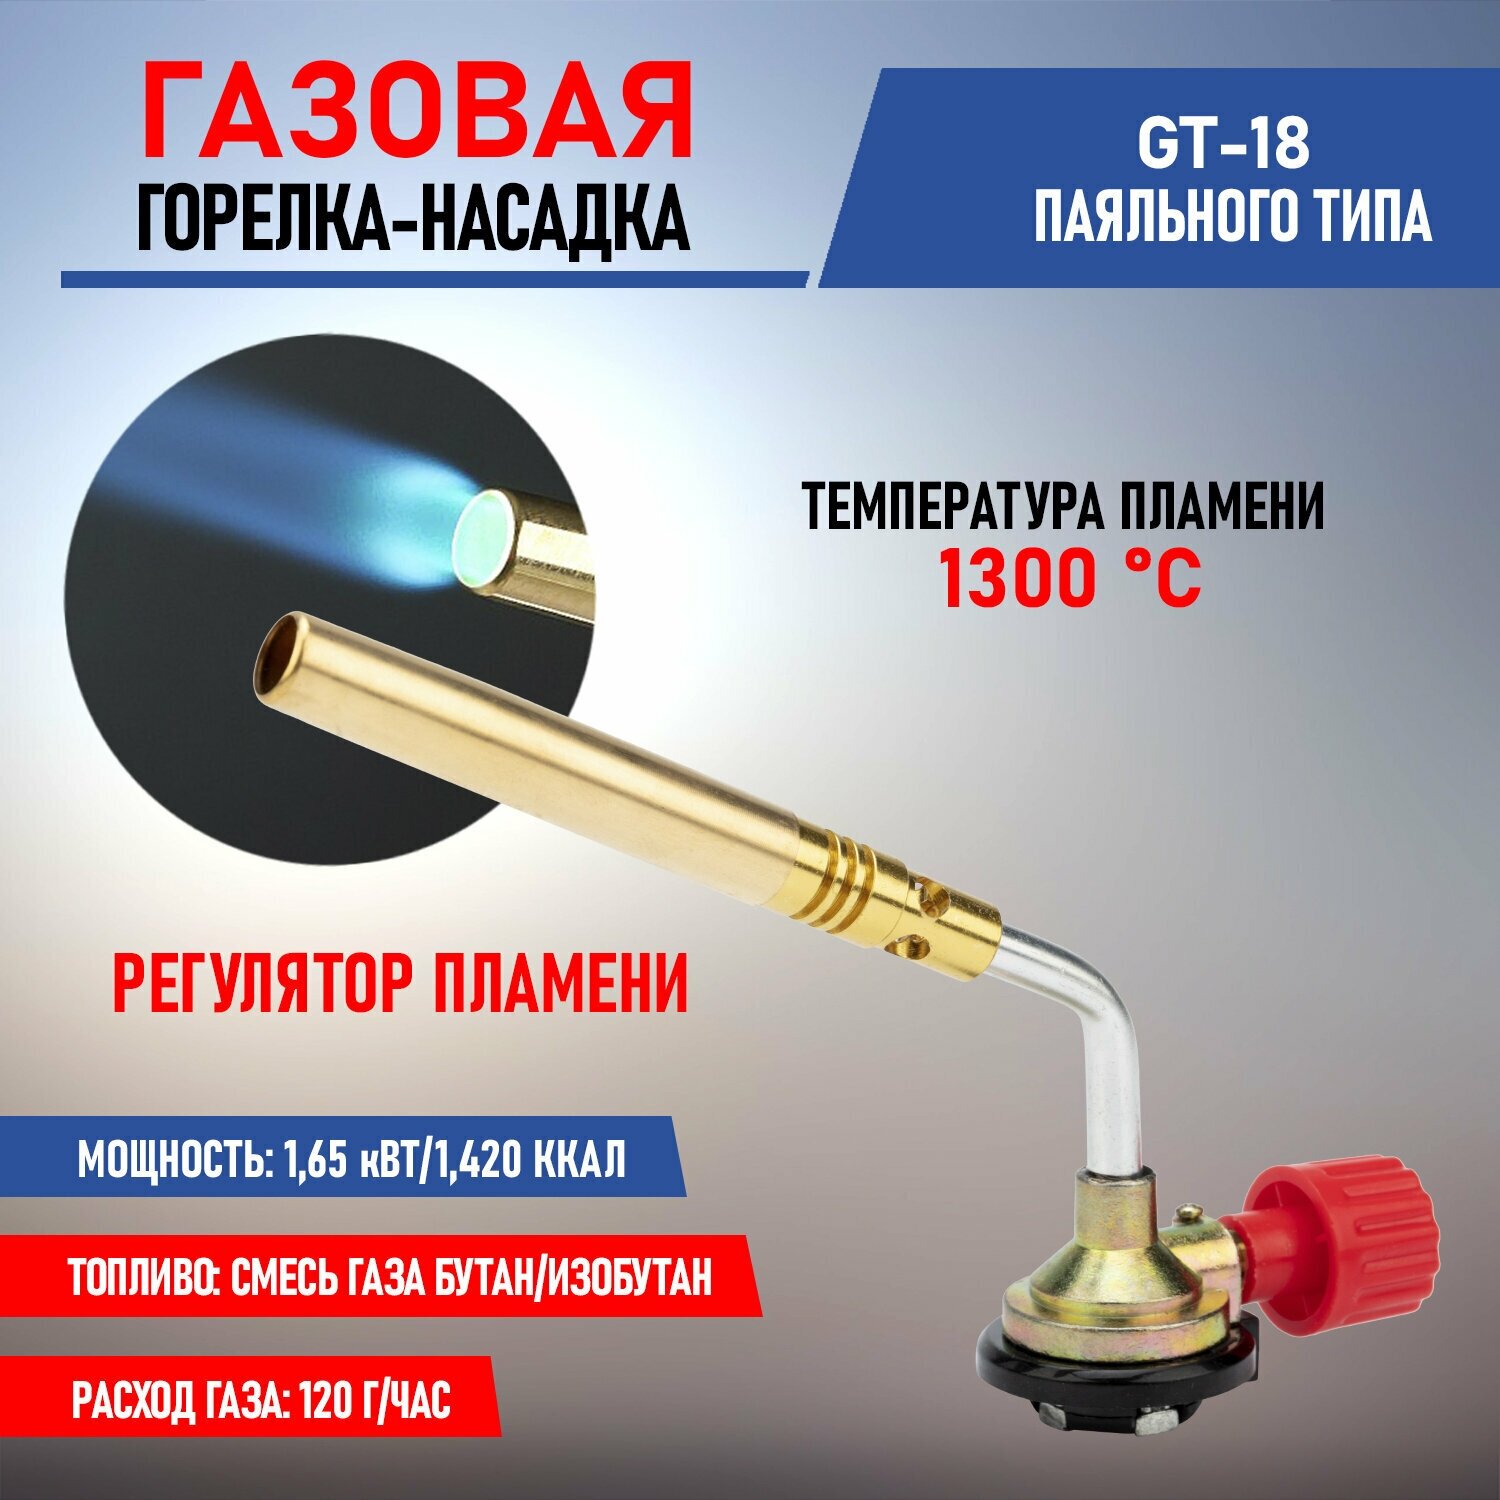 Газовая горелка-насадка GT-18 с механическим с регулятором паяльного типа REXANT